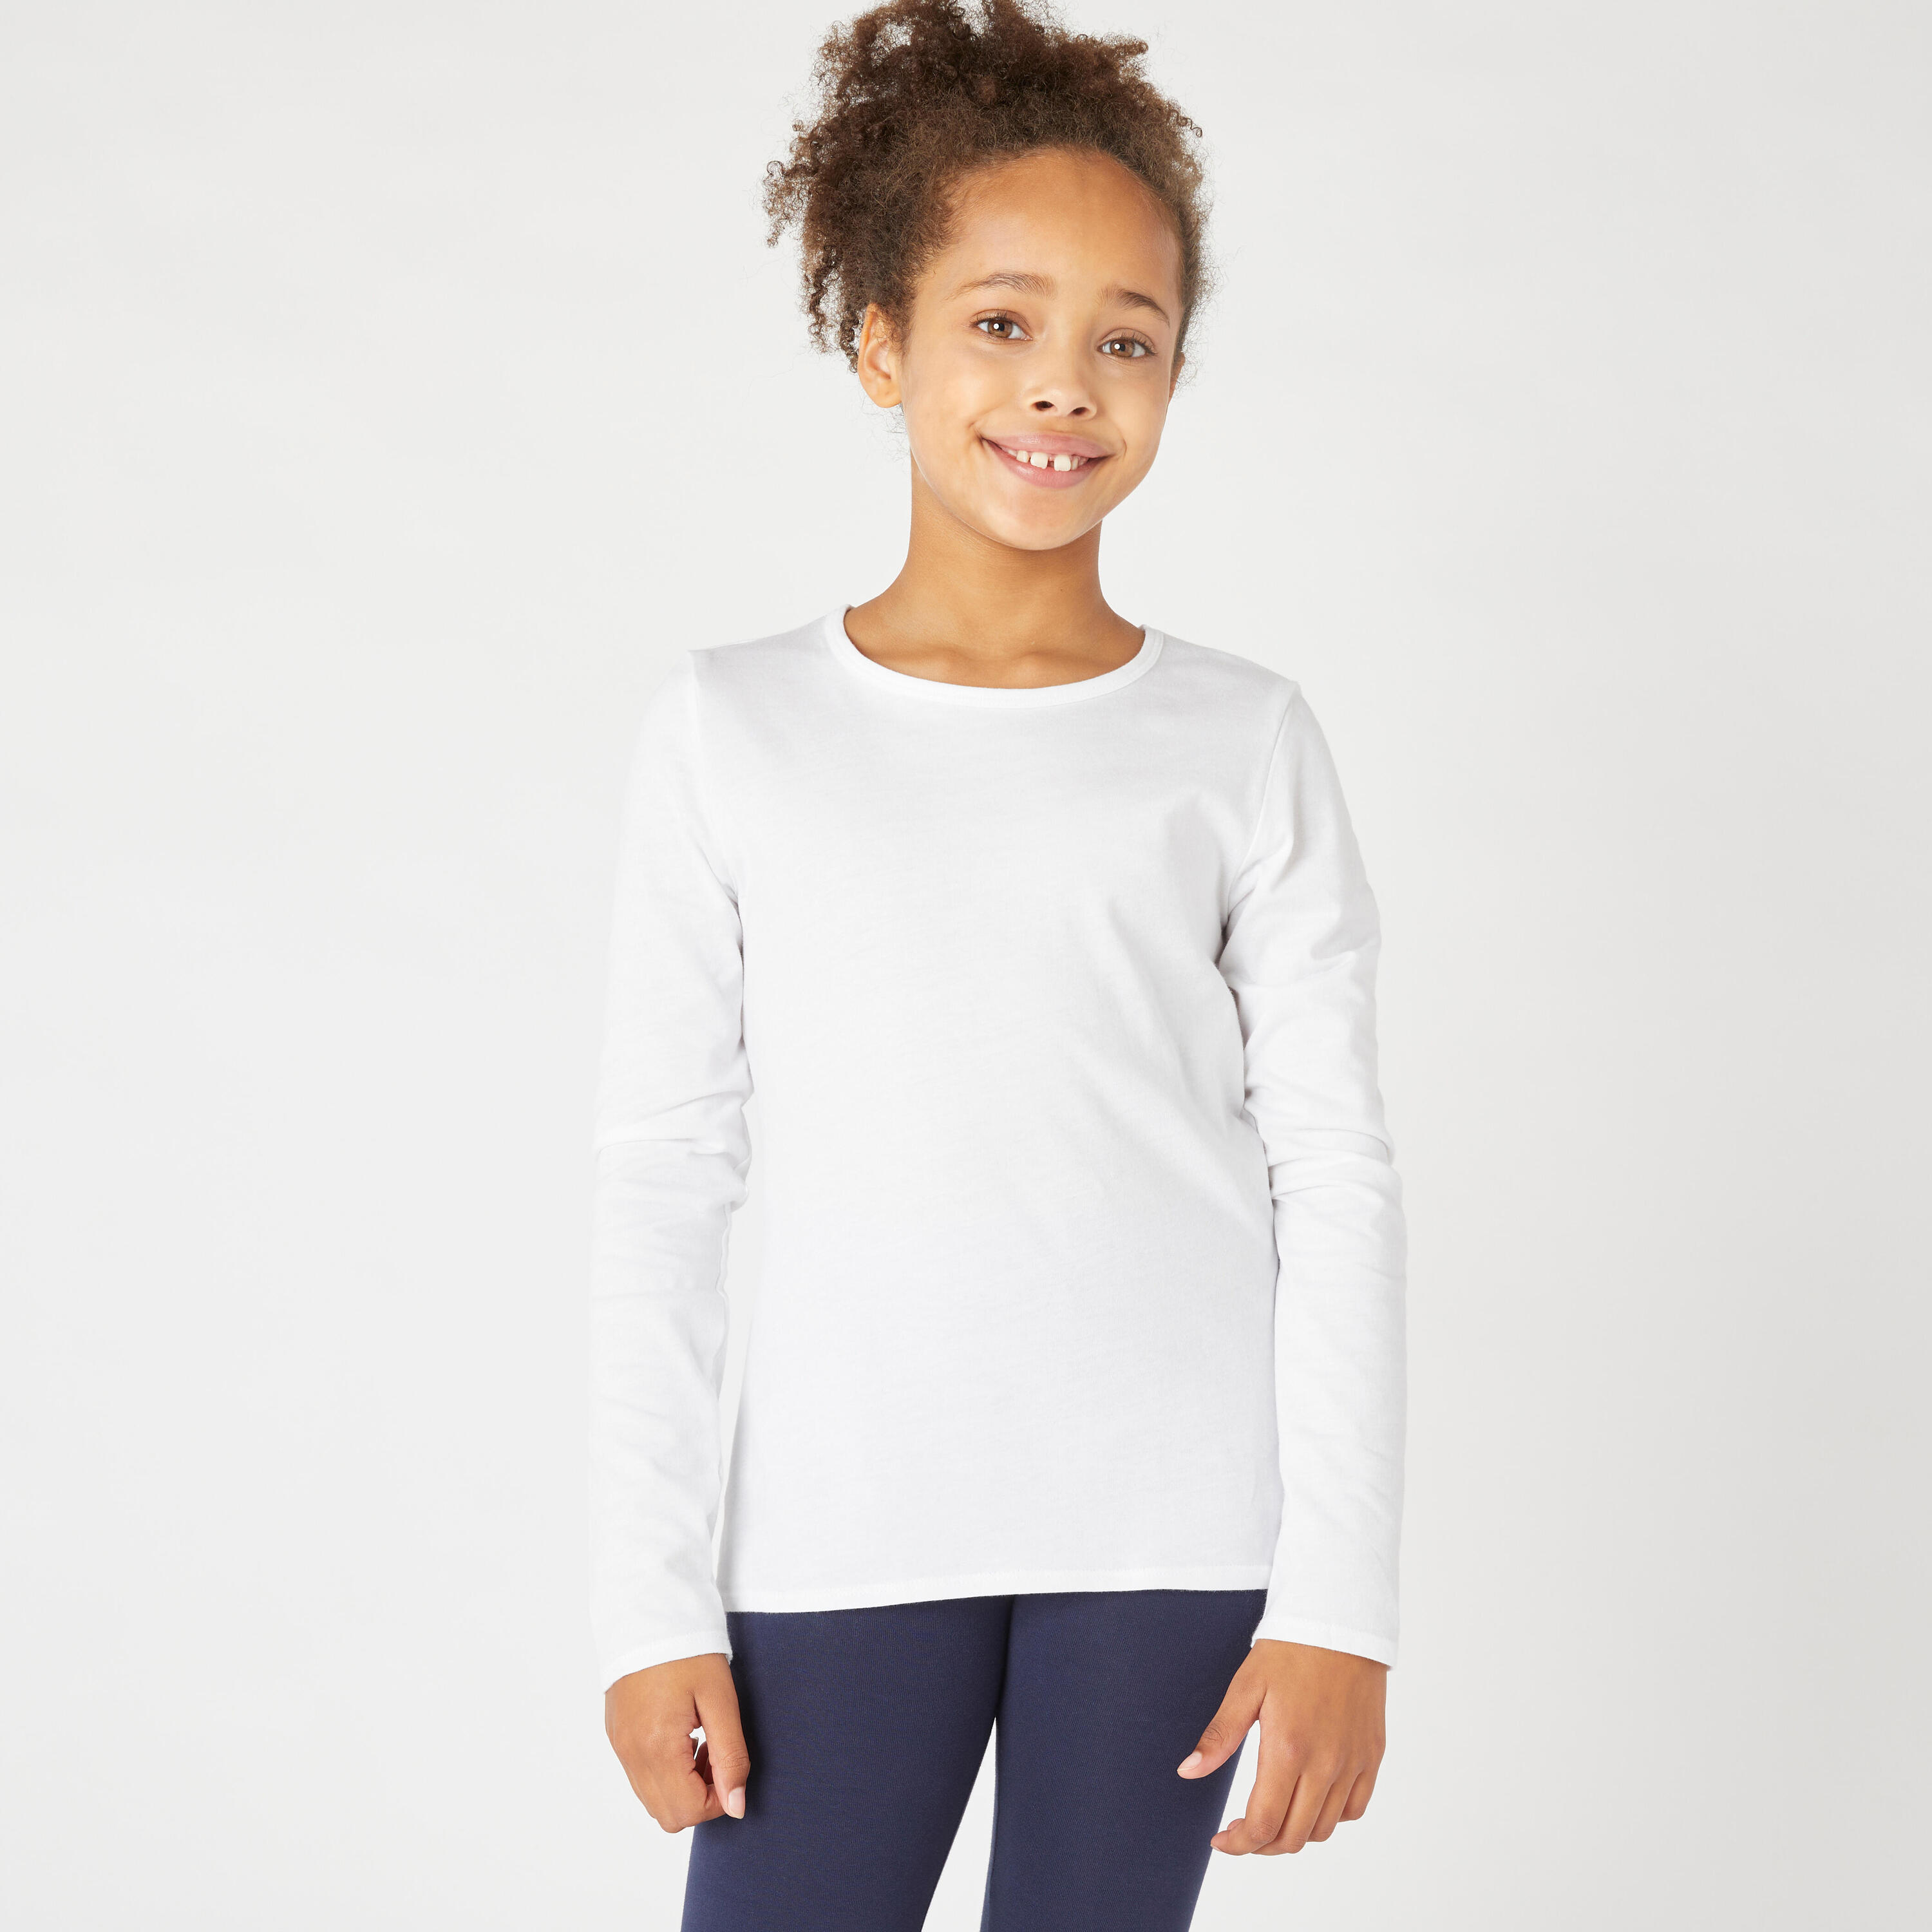 Kids' Basic Long-Sleeved Cotton T-Shirt - White 1/4